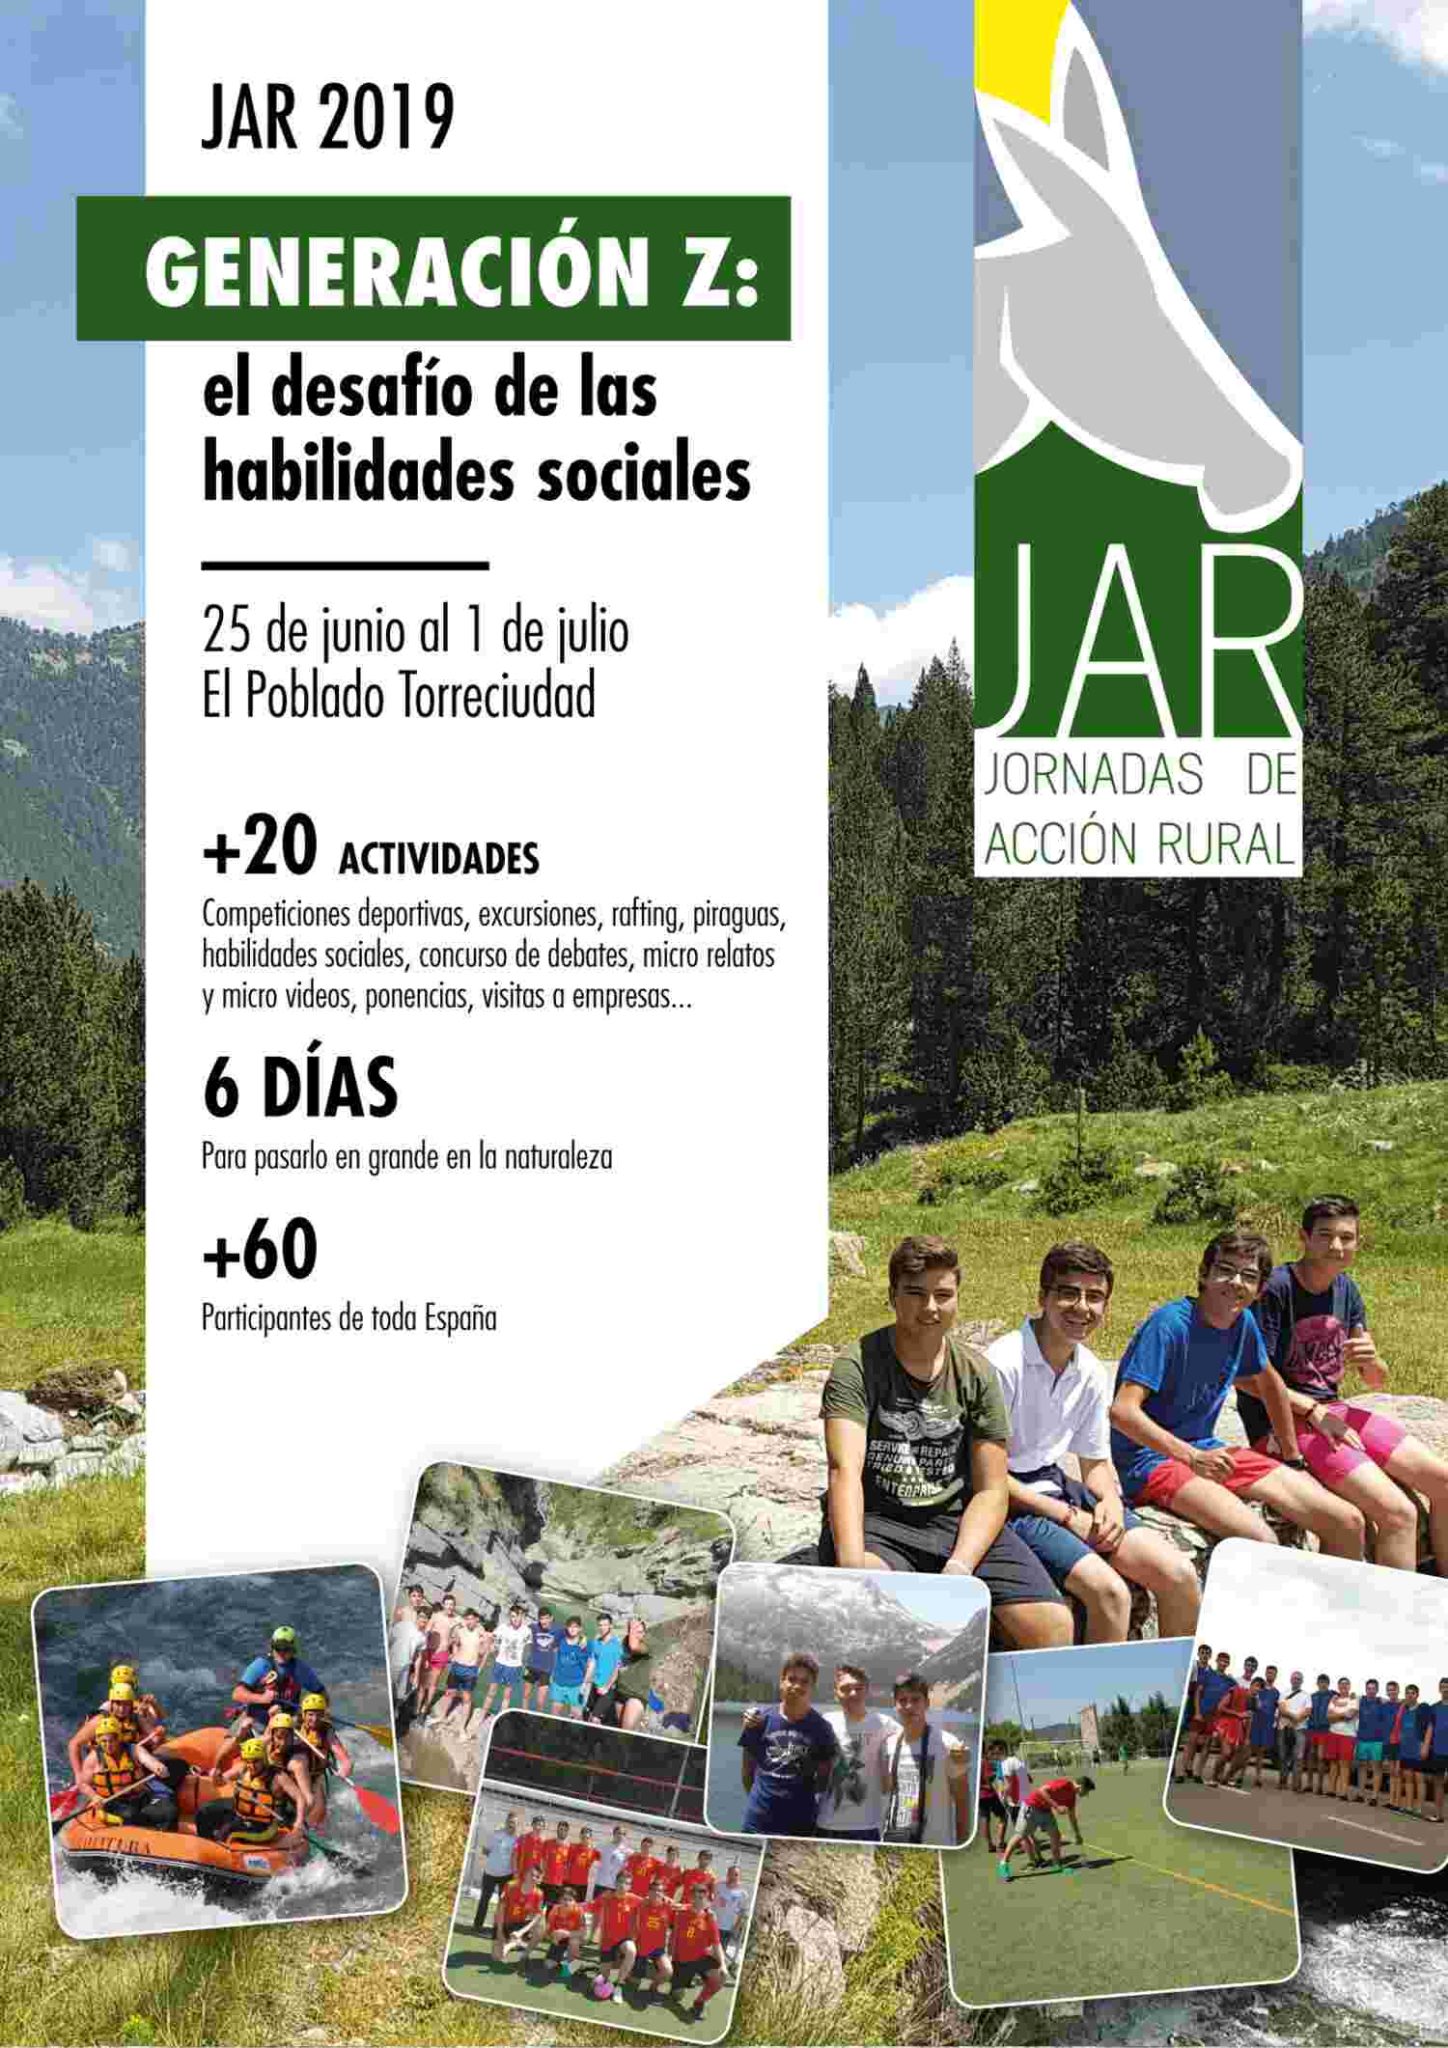 Torrealba participará en las Jornadas de Acción Rural en los Pirineos